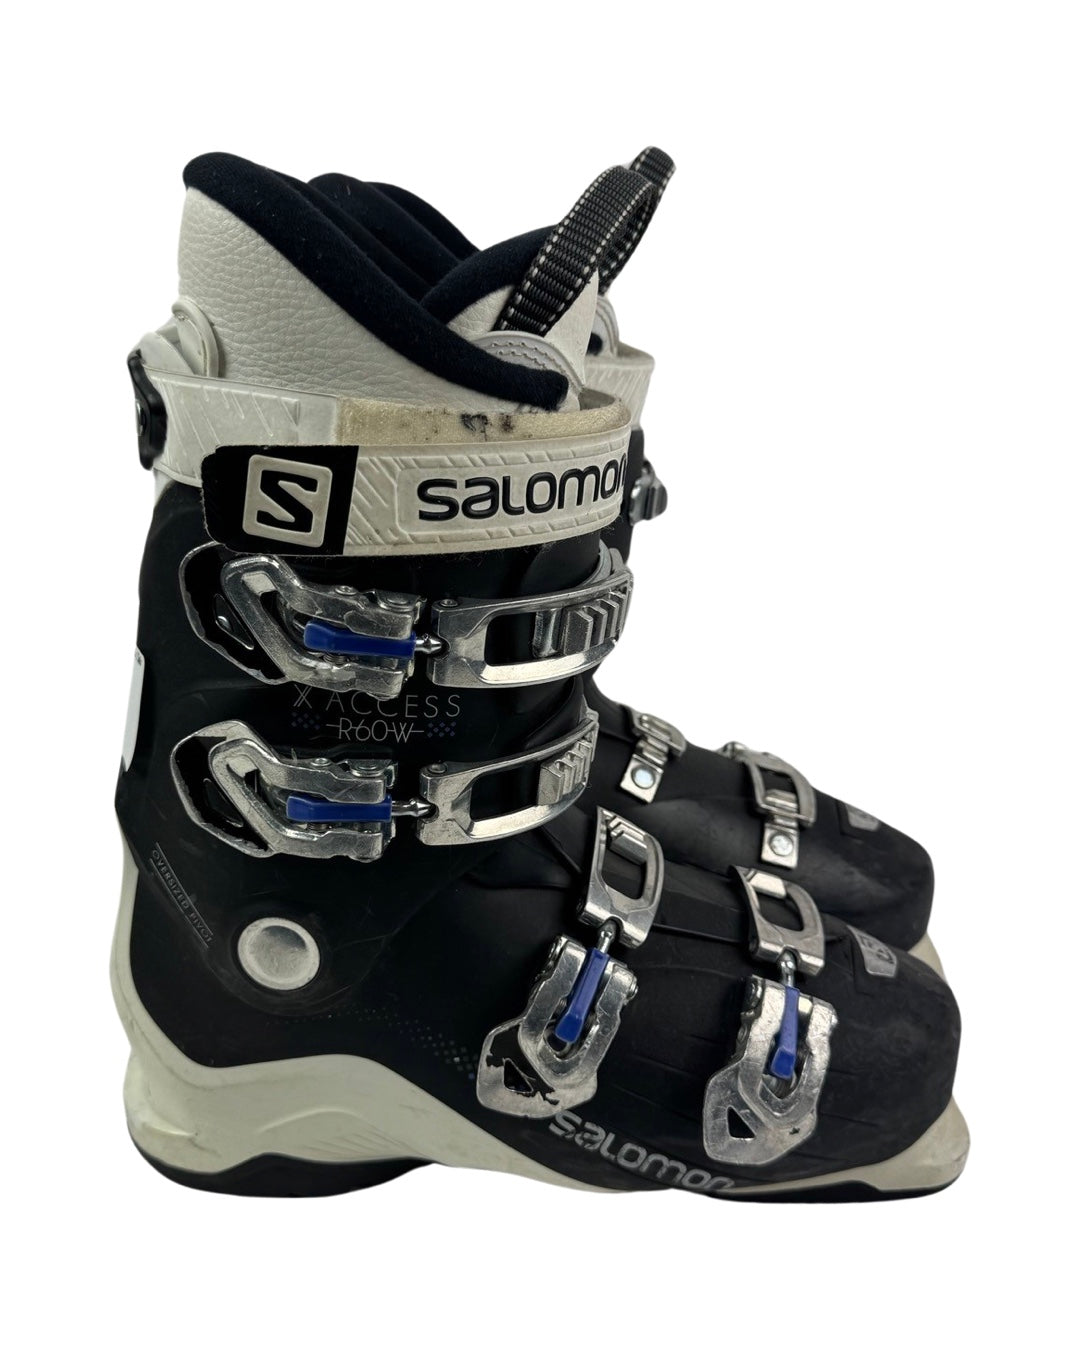 Salomon Access R60W